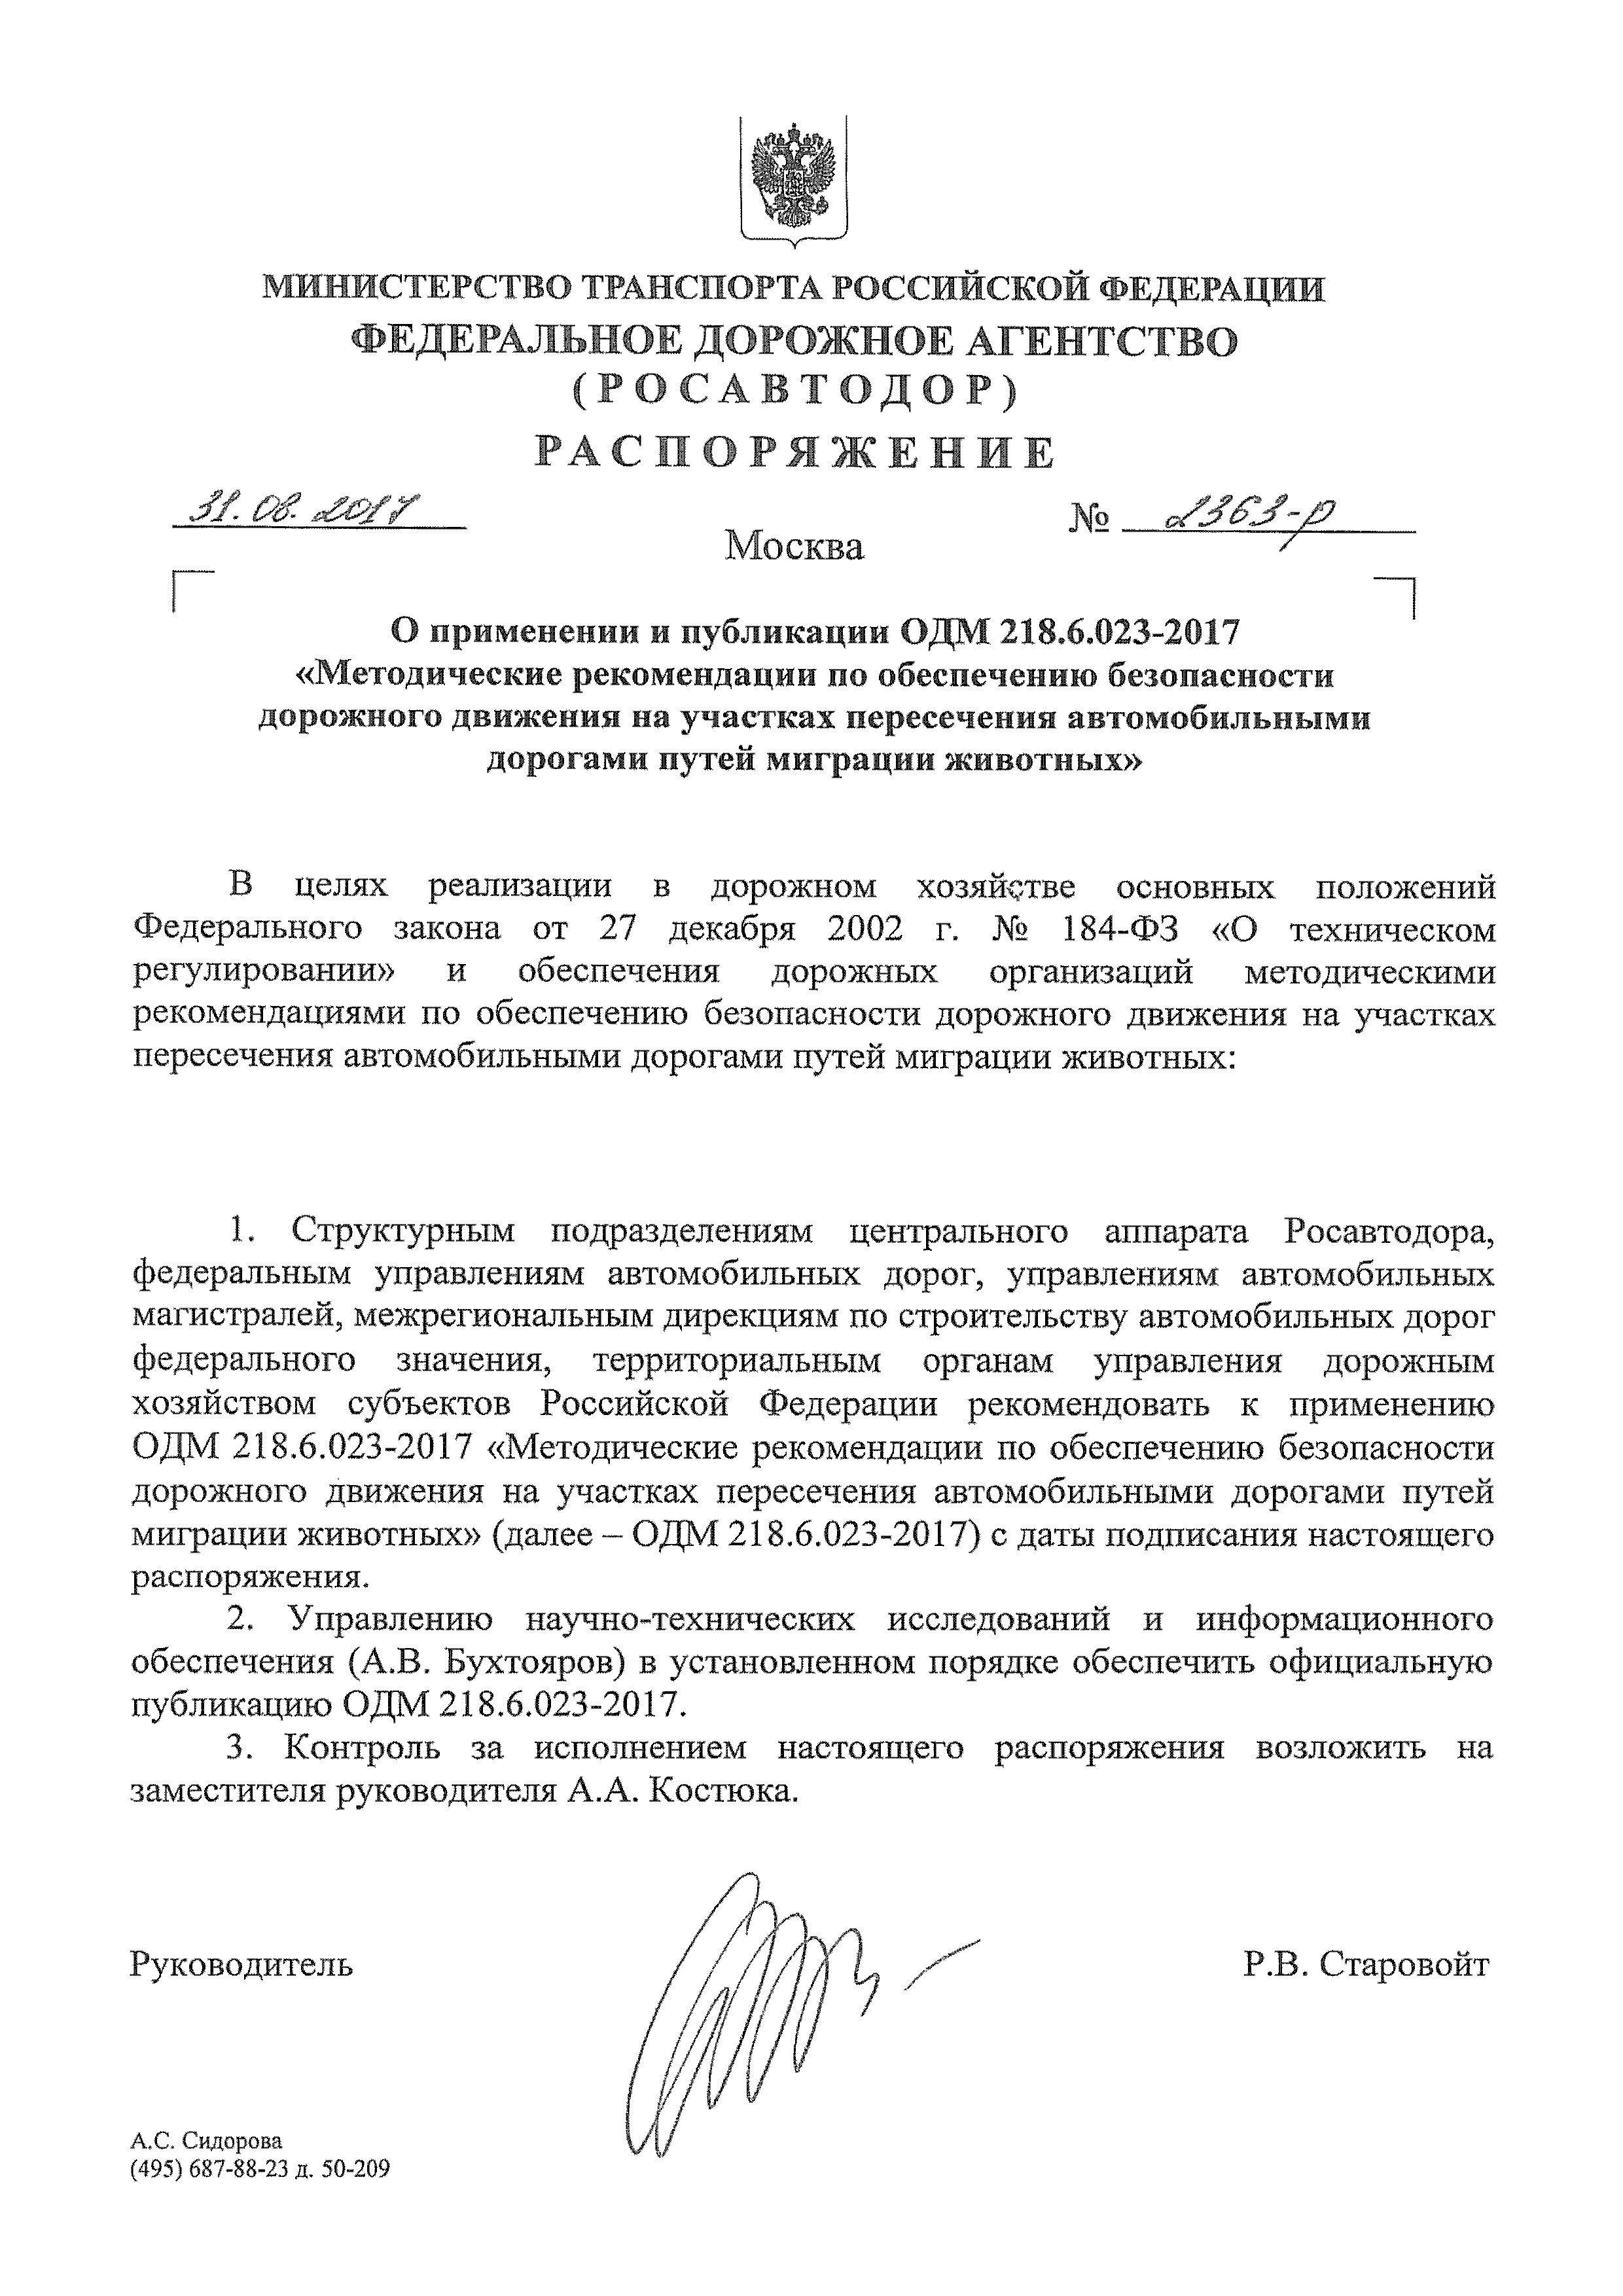 ОДМ 218.6.023-2017